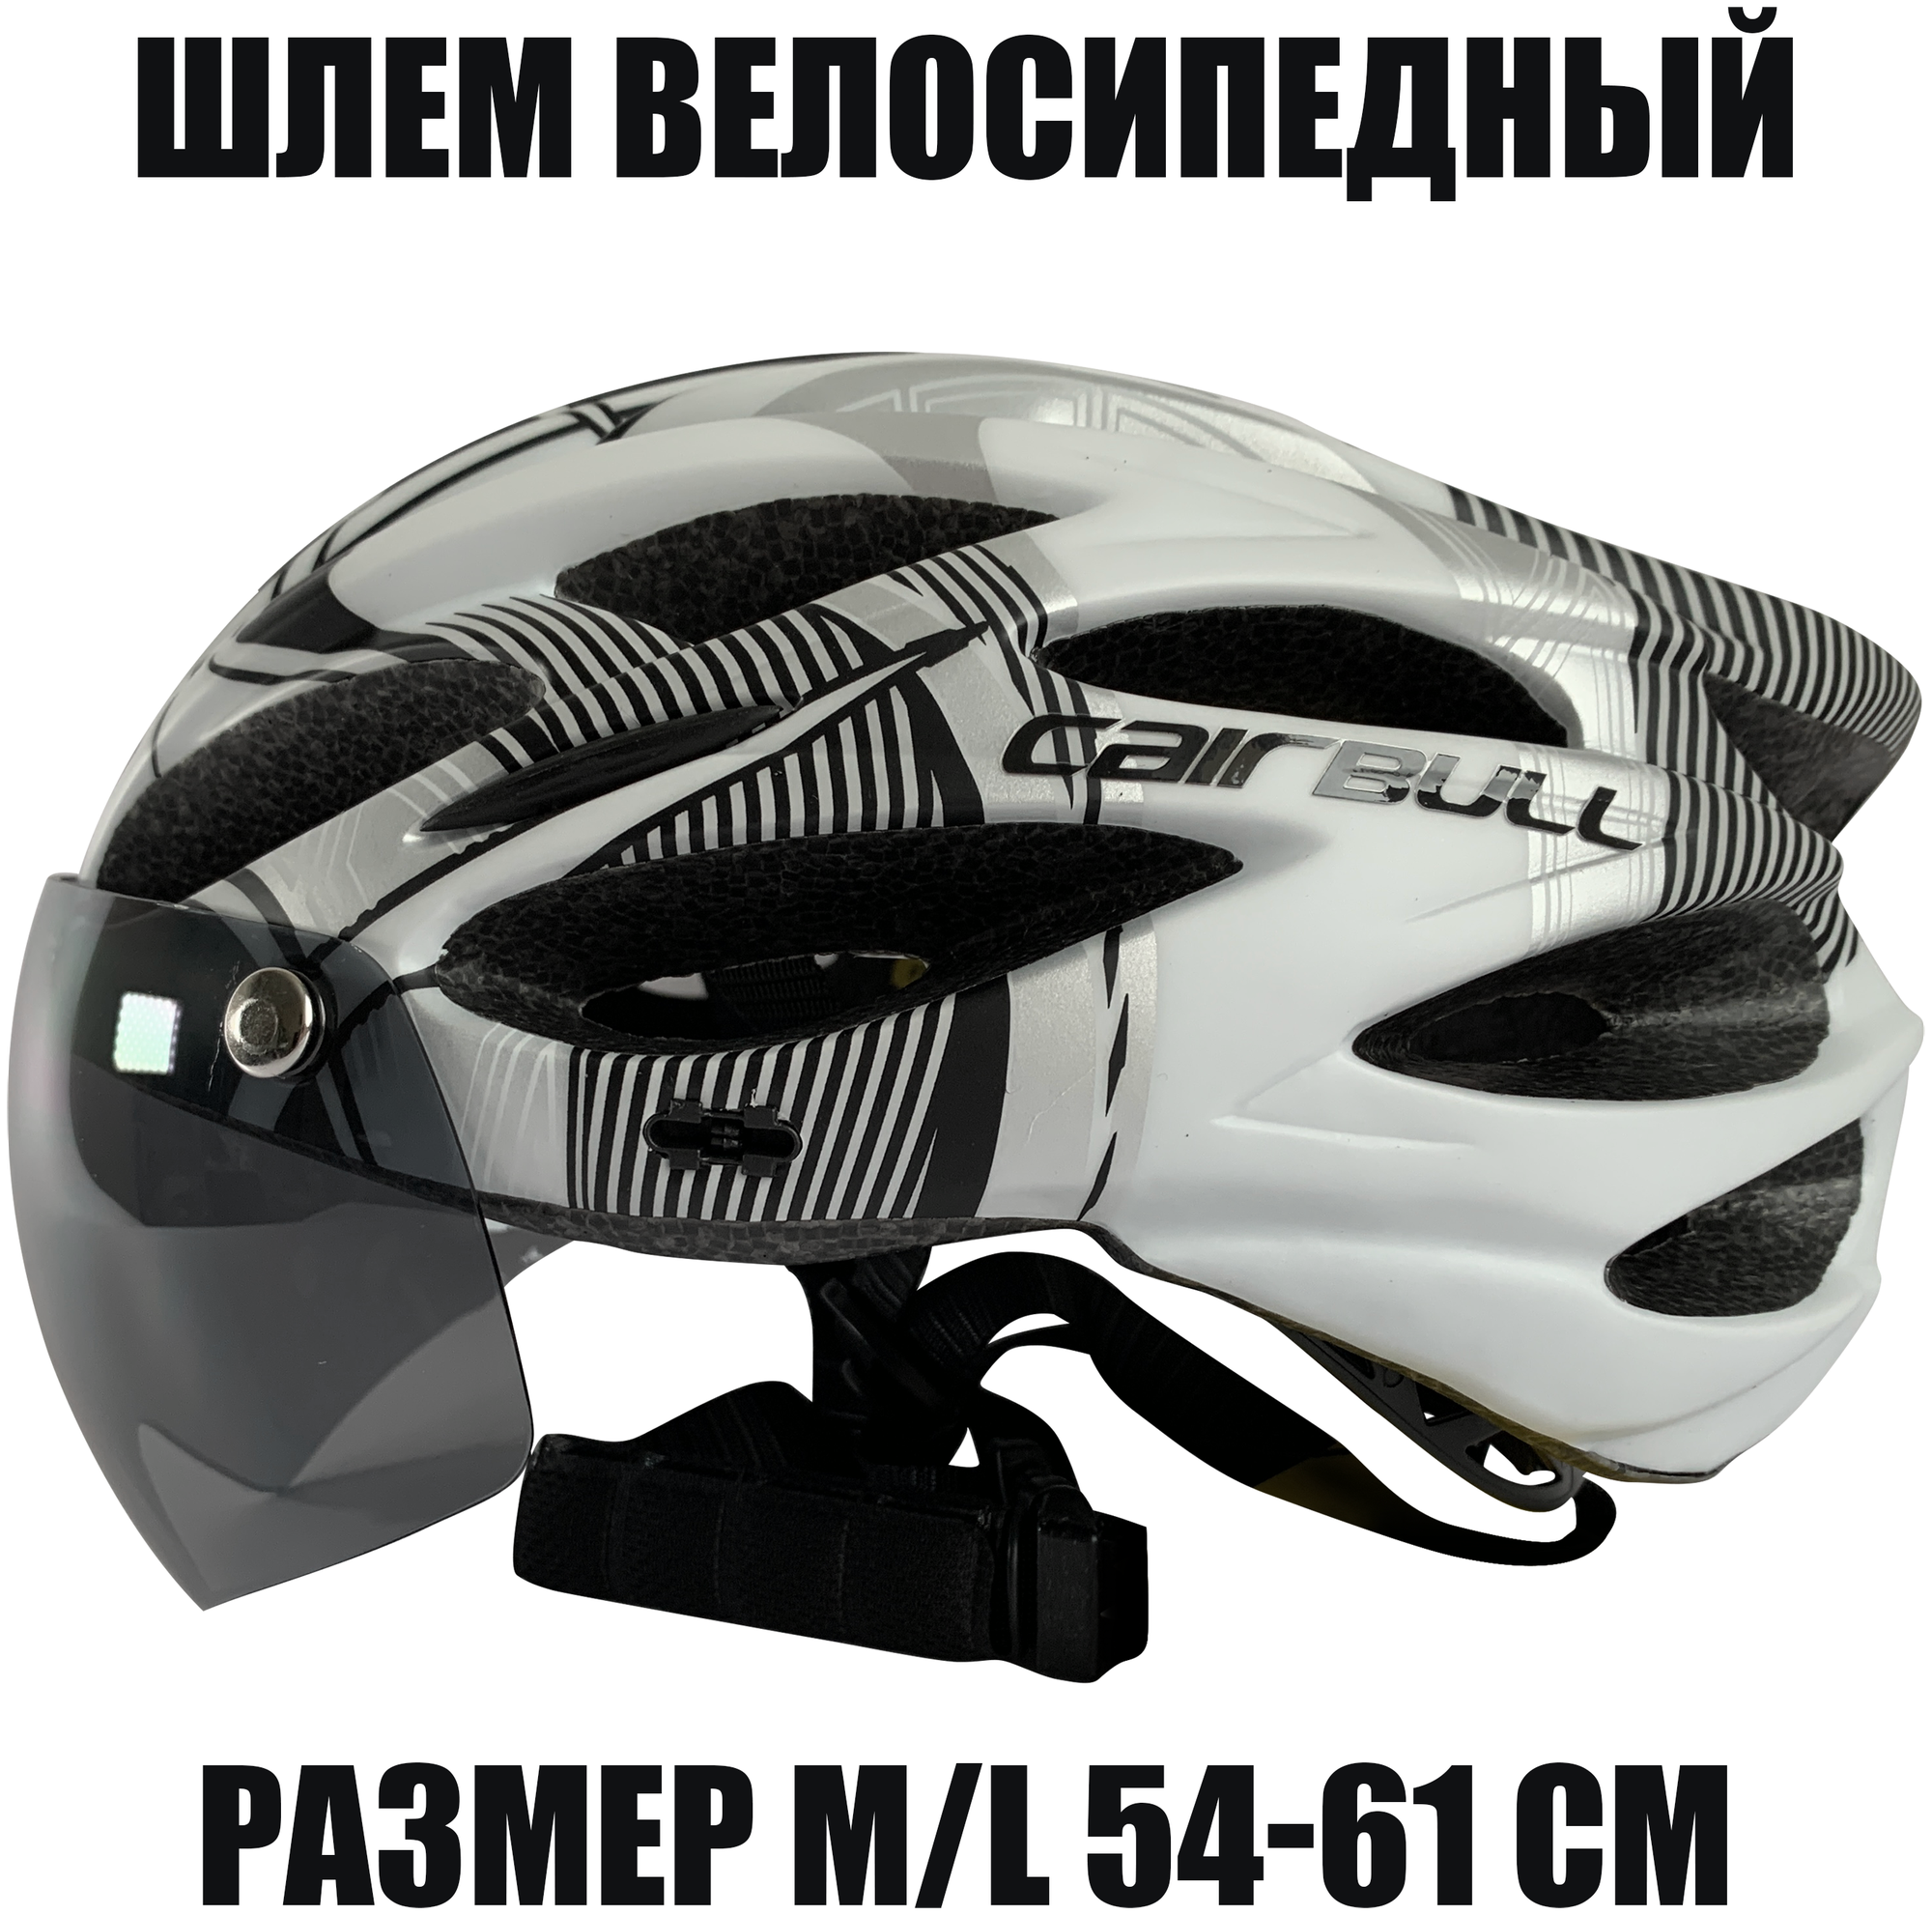 Шлем велосипедный со съемным визором